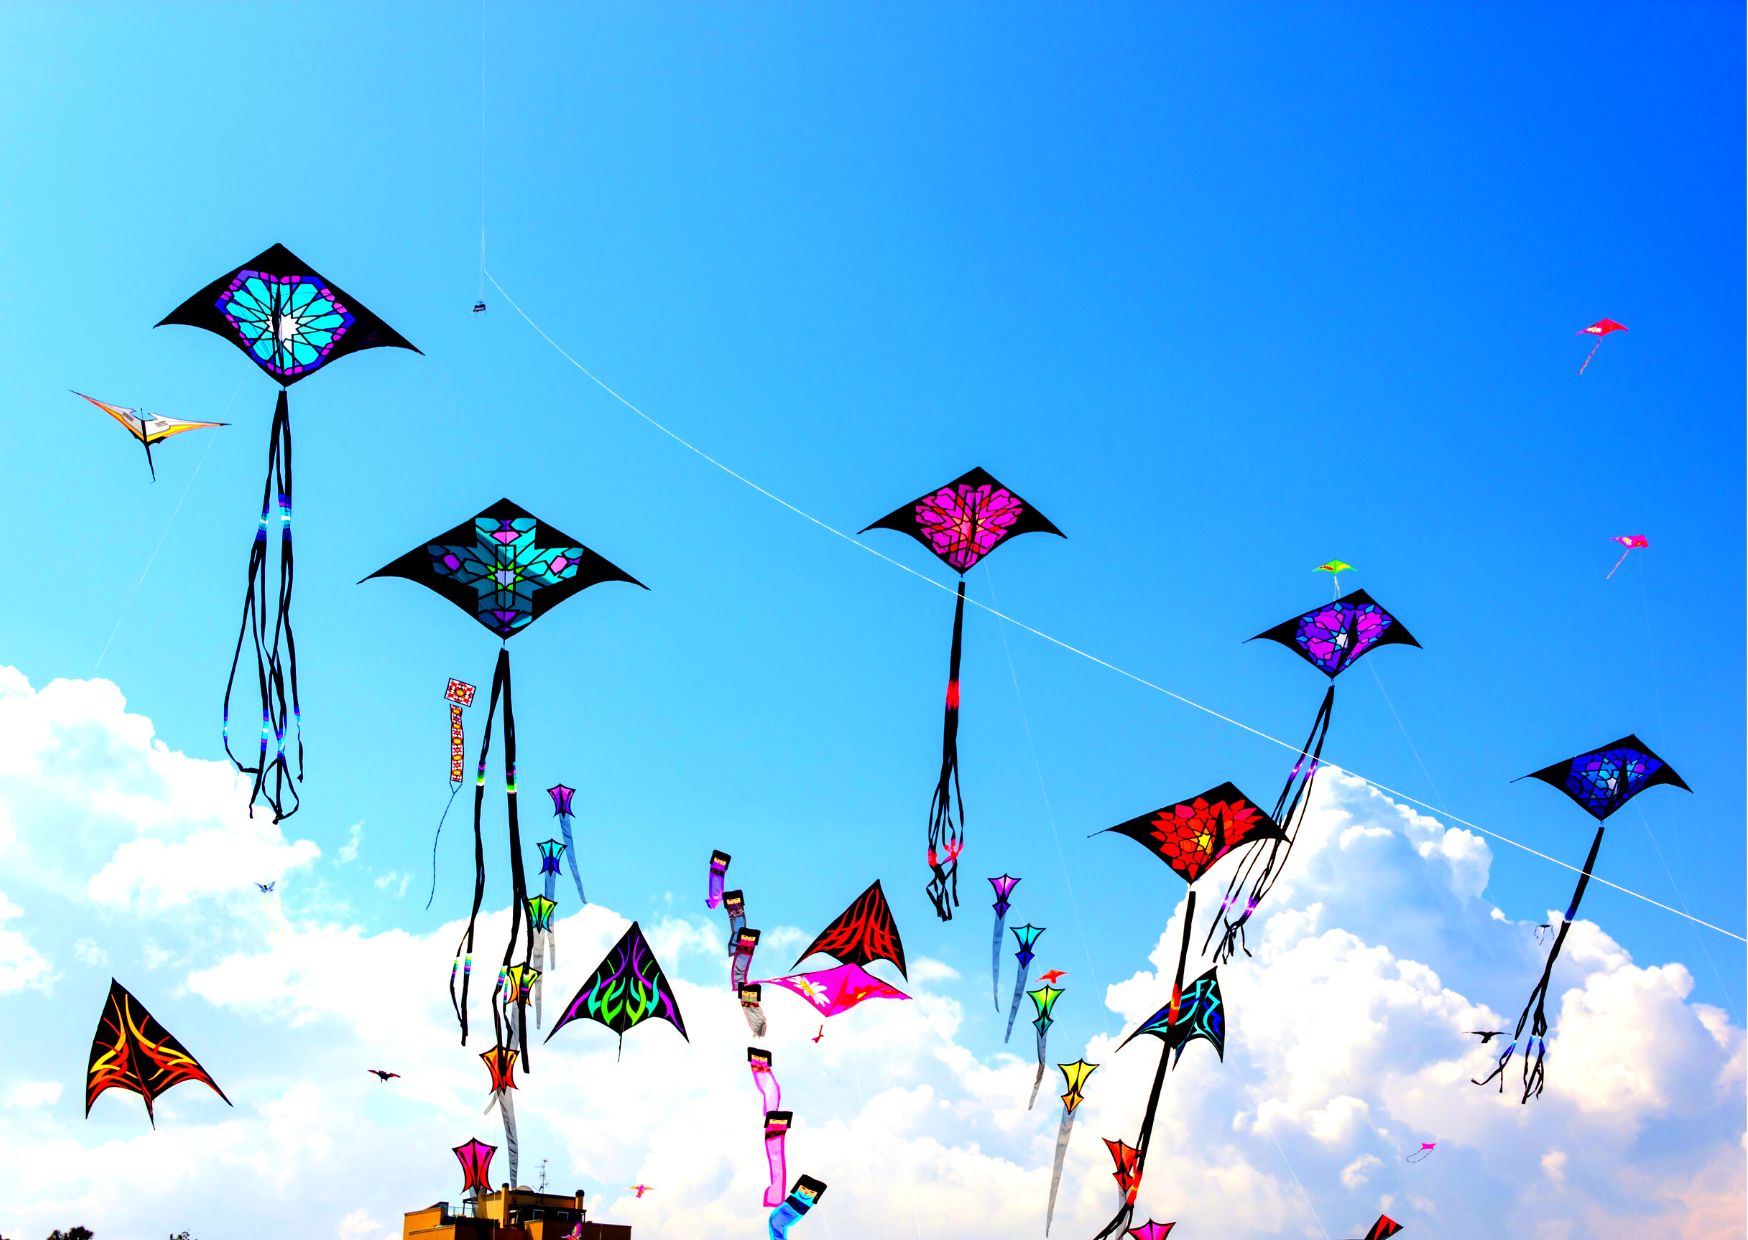 Uttrayan kite festival of Gujarat kites in sky